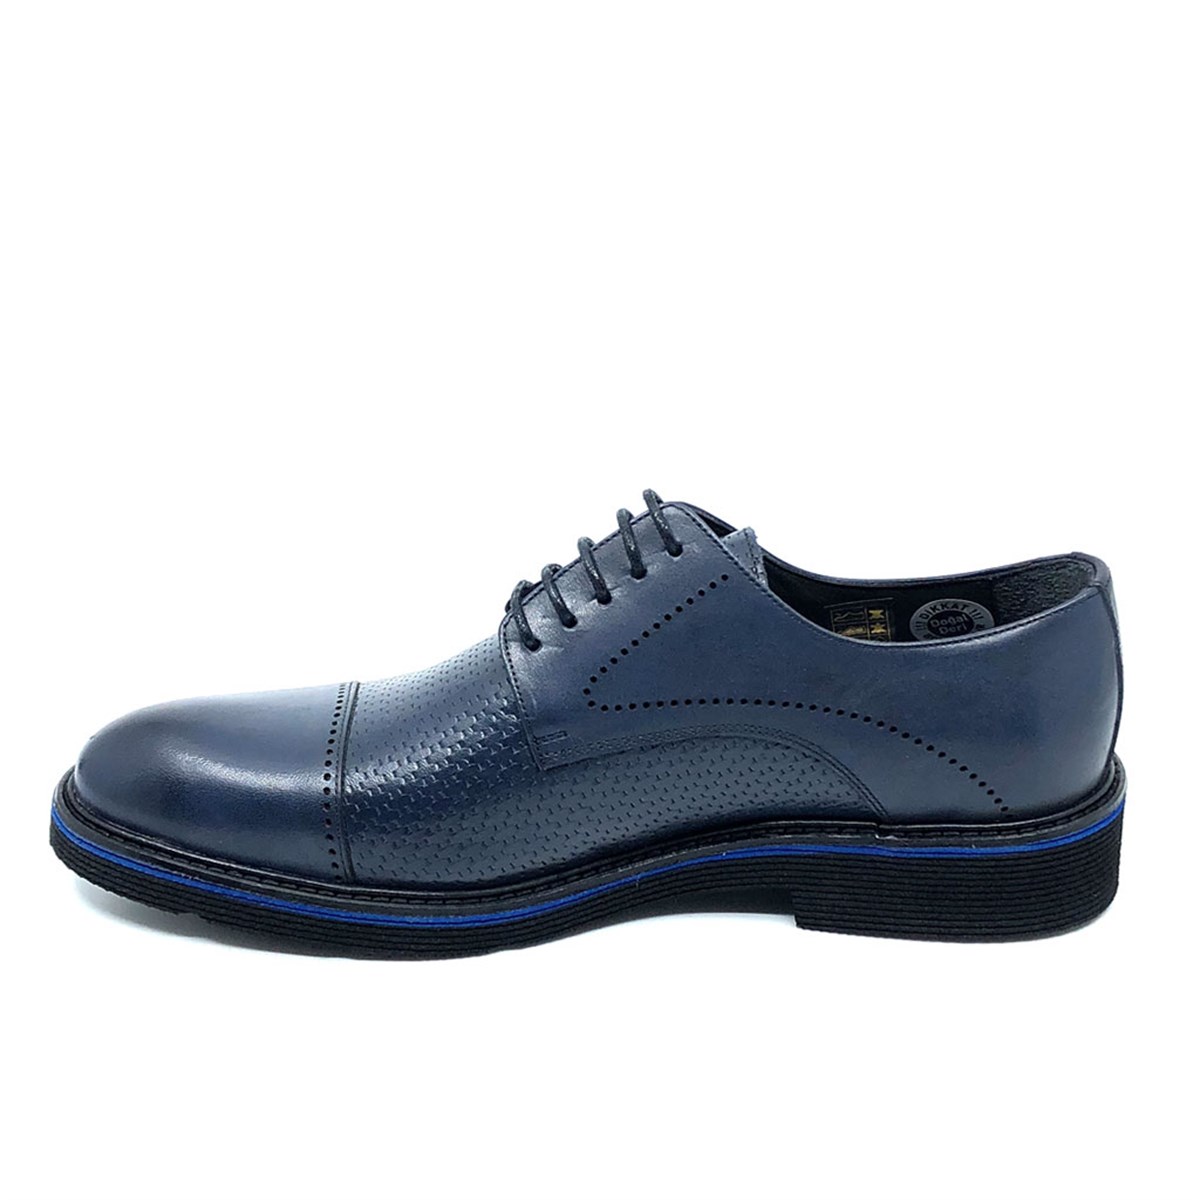 Fosco Mavi Günlük Erkek Ayakkabı 1060 158 - Fosco